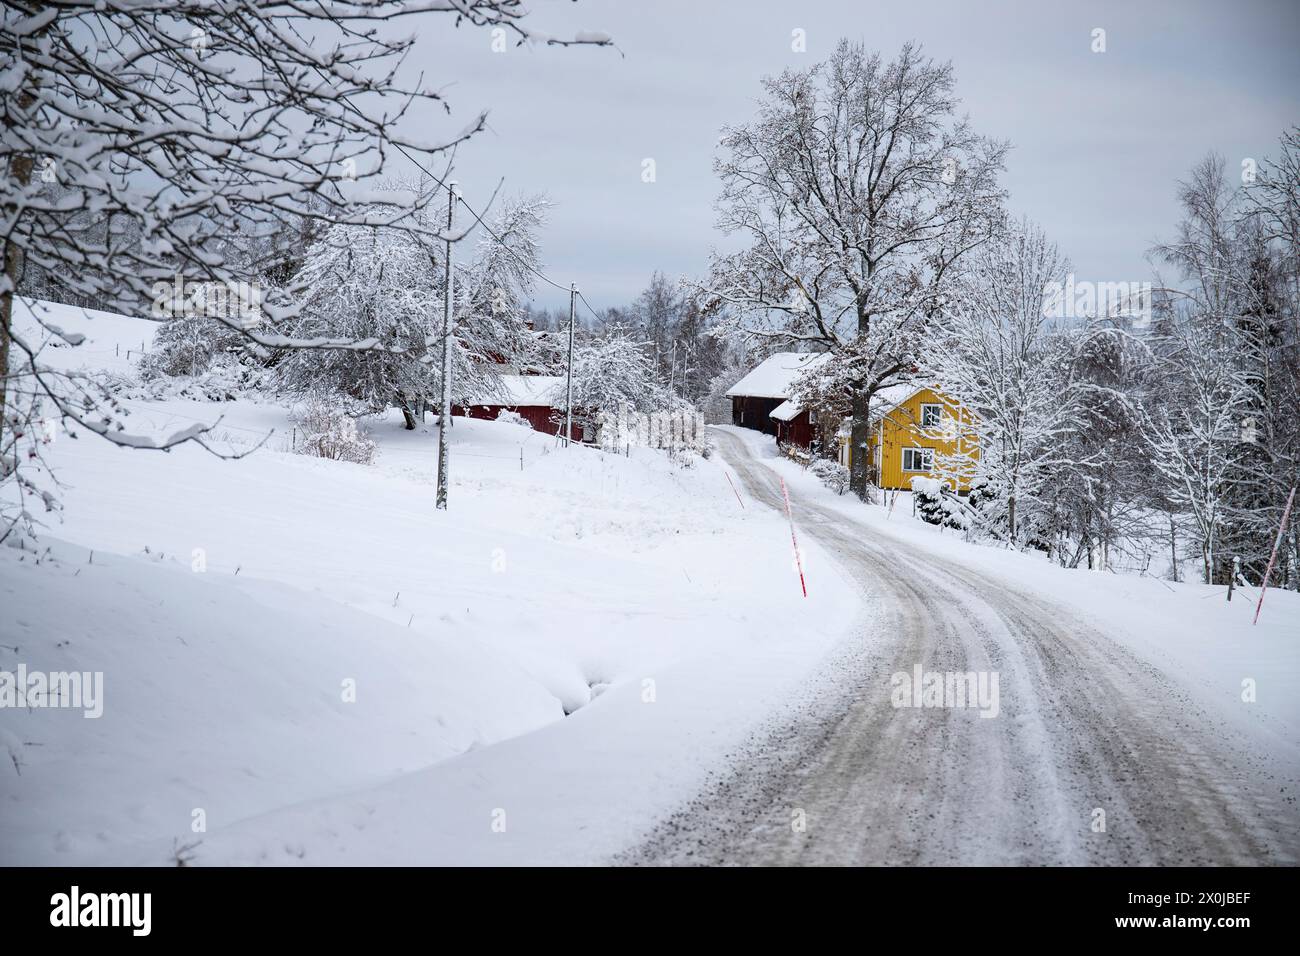 Maison suédoise typique. Maison en bois dans un paysage d'hiver avec de la glace et de la neige. Petite colonie au milieu d'une forêt enneigée. Paysage photographié en Suède Banque D'Images